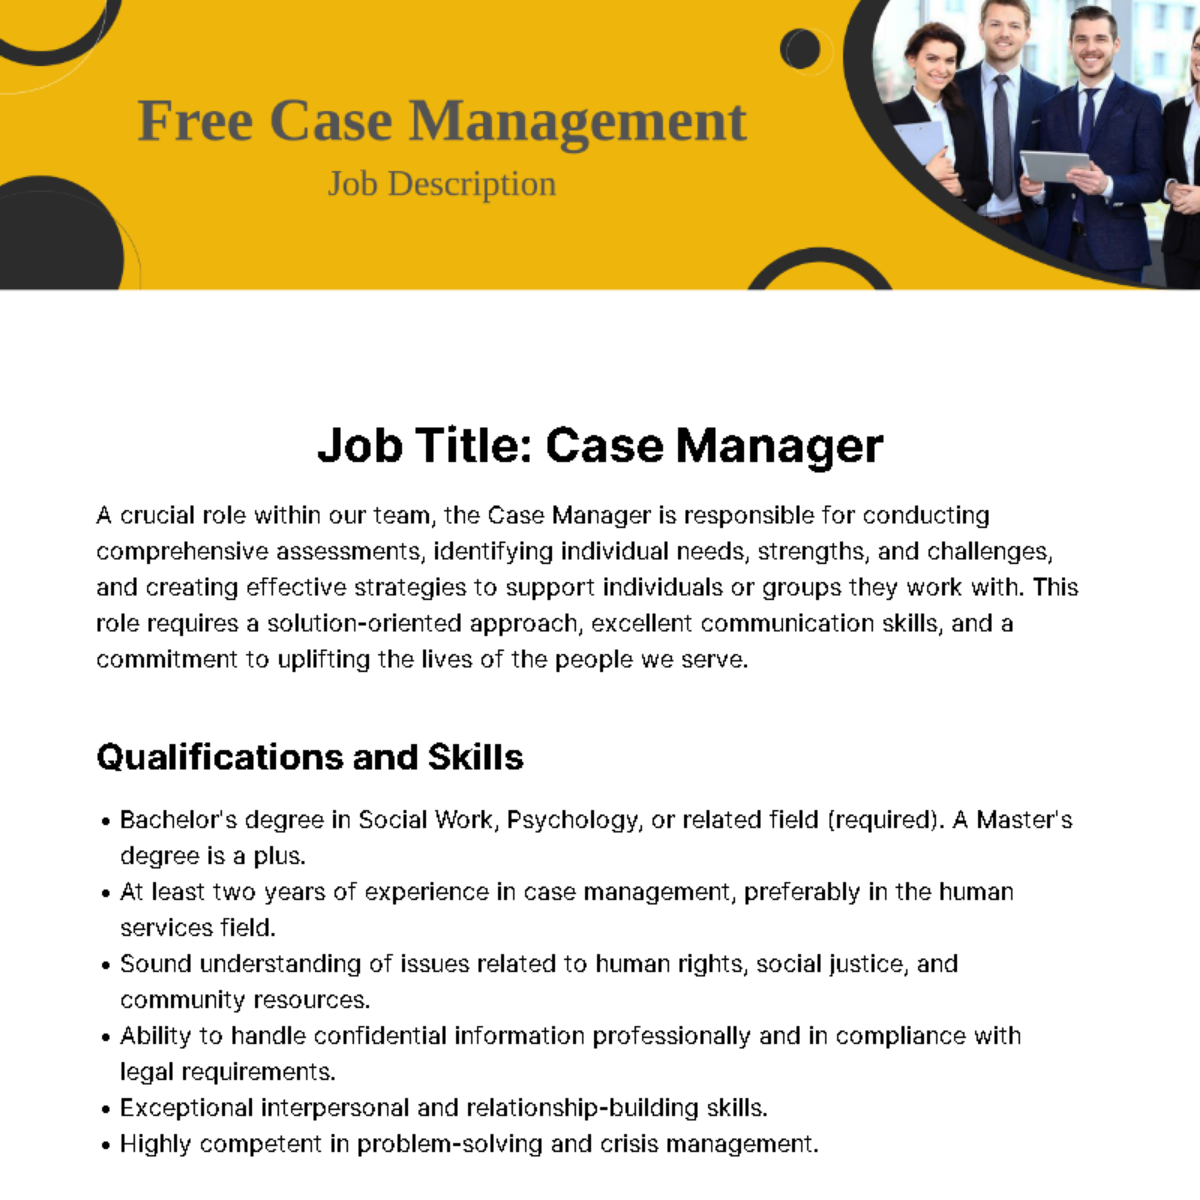 Case Management Job Description Template